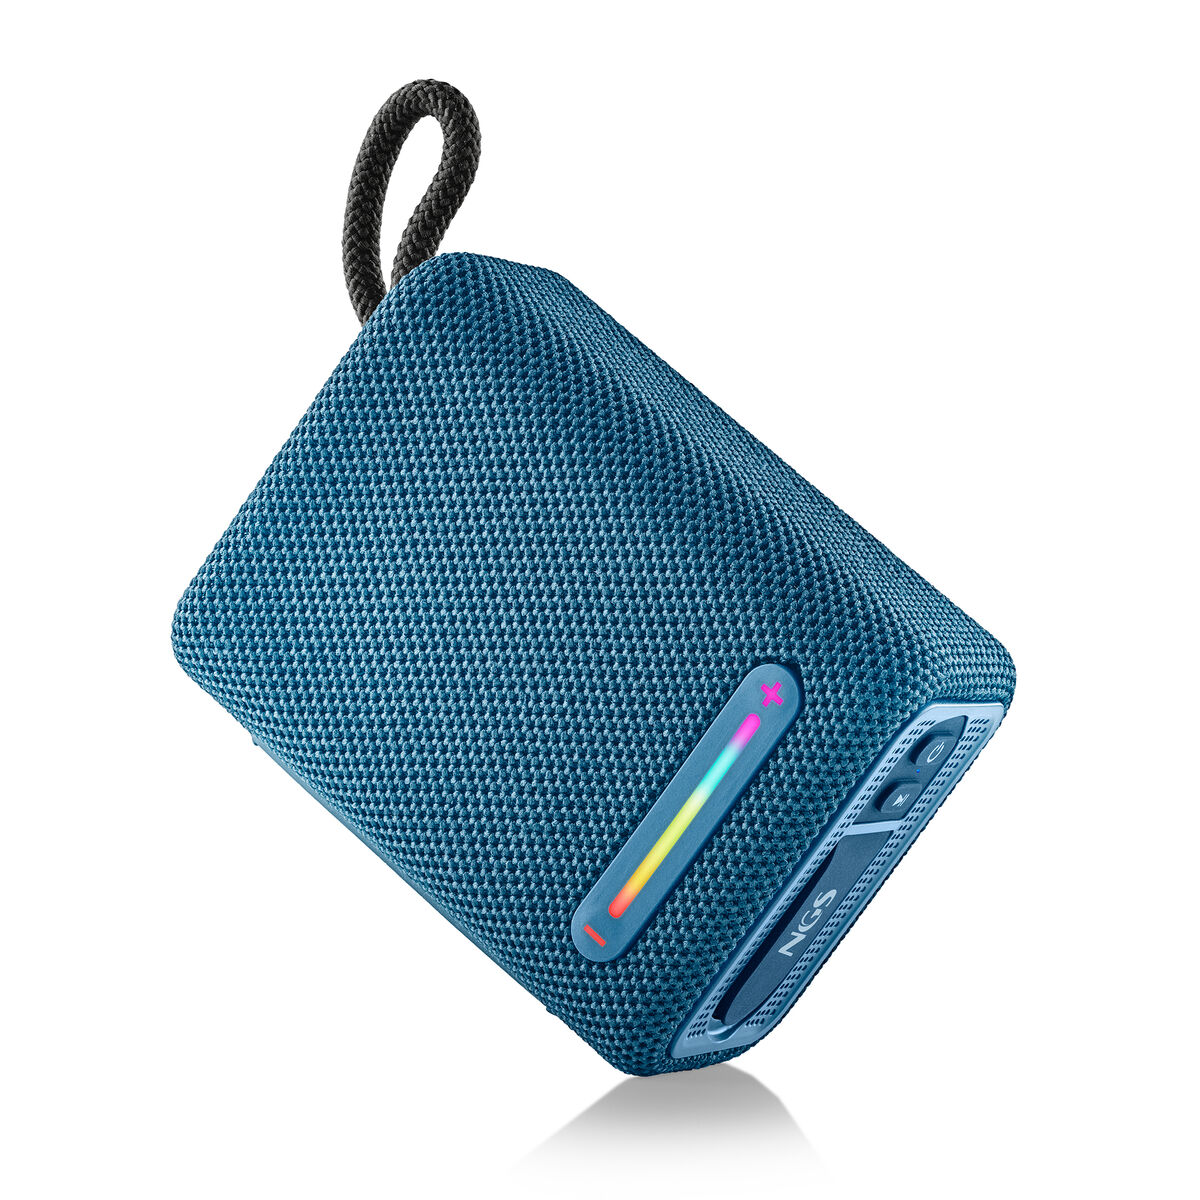 Osta tuote Kannettavat Bluetooth-kaiuttimet NGS Roller Furia 1 Blue Sininen 15 W verkkokaupastamme Korhone: Tietokoneet & Elektroniikka 20% alennuksella koodilla VIIKONLOPPU